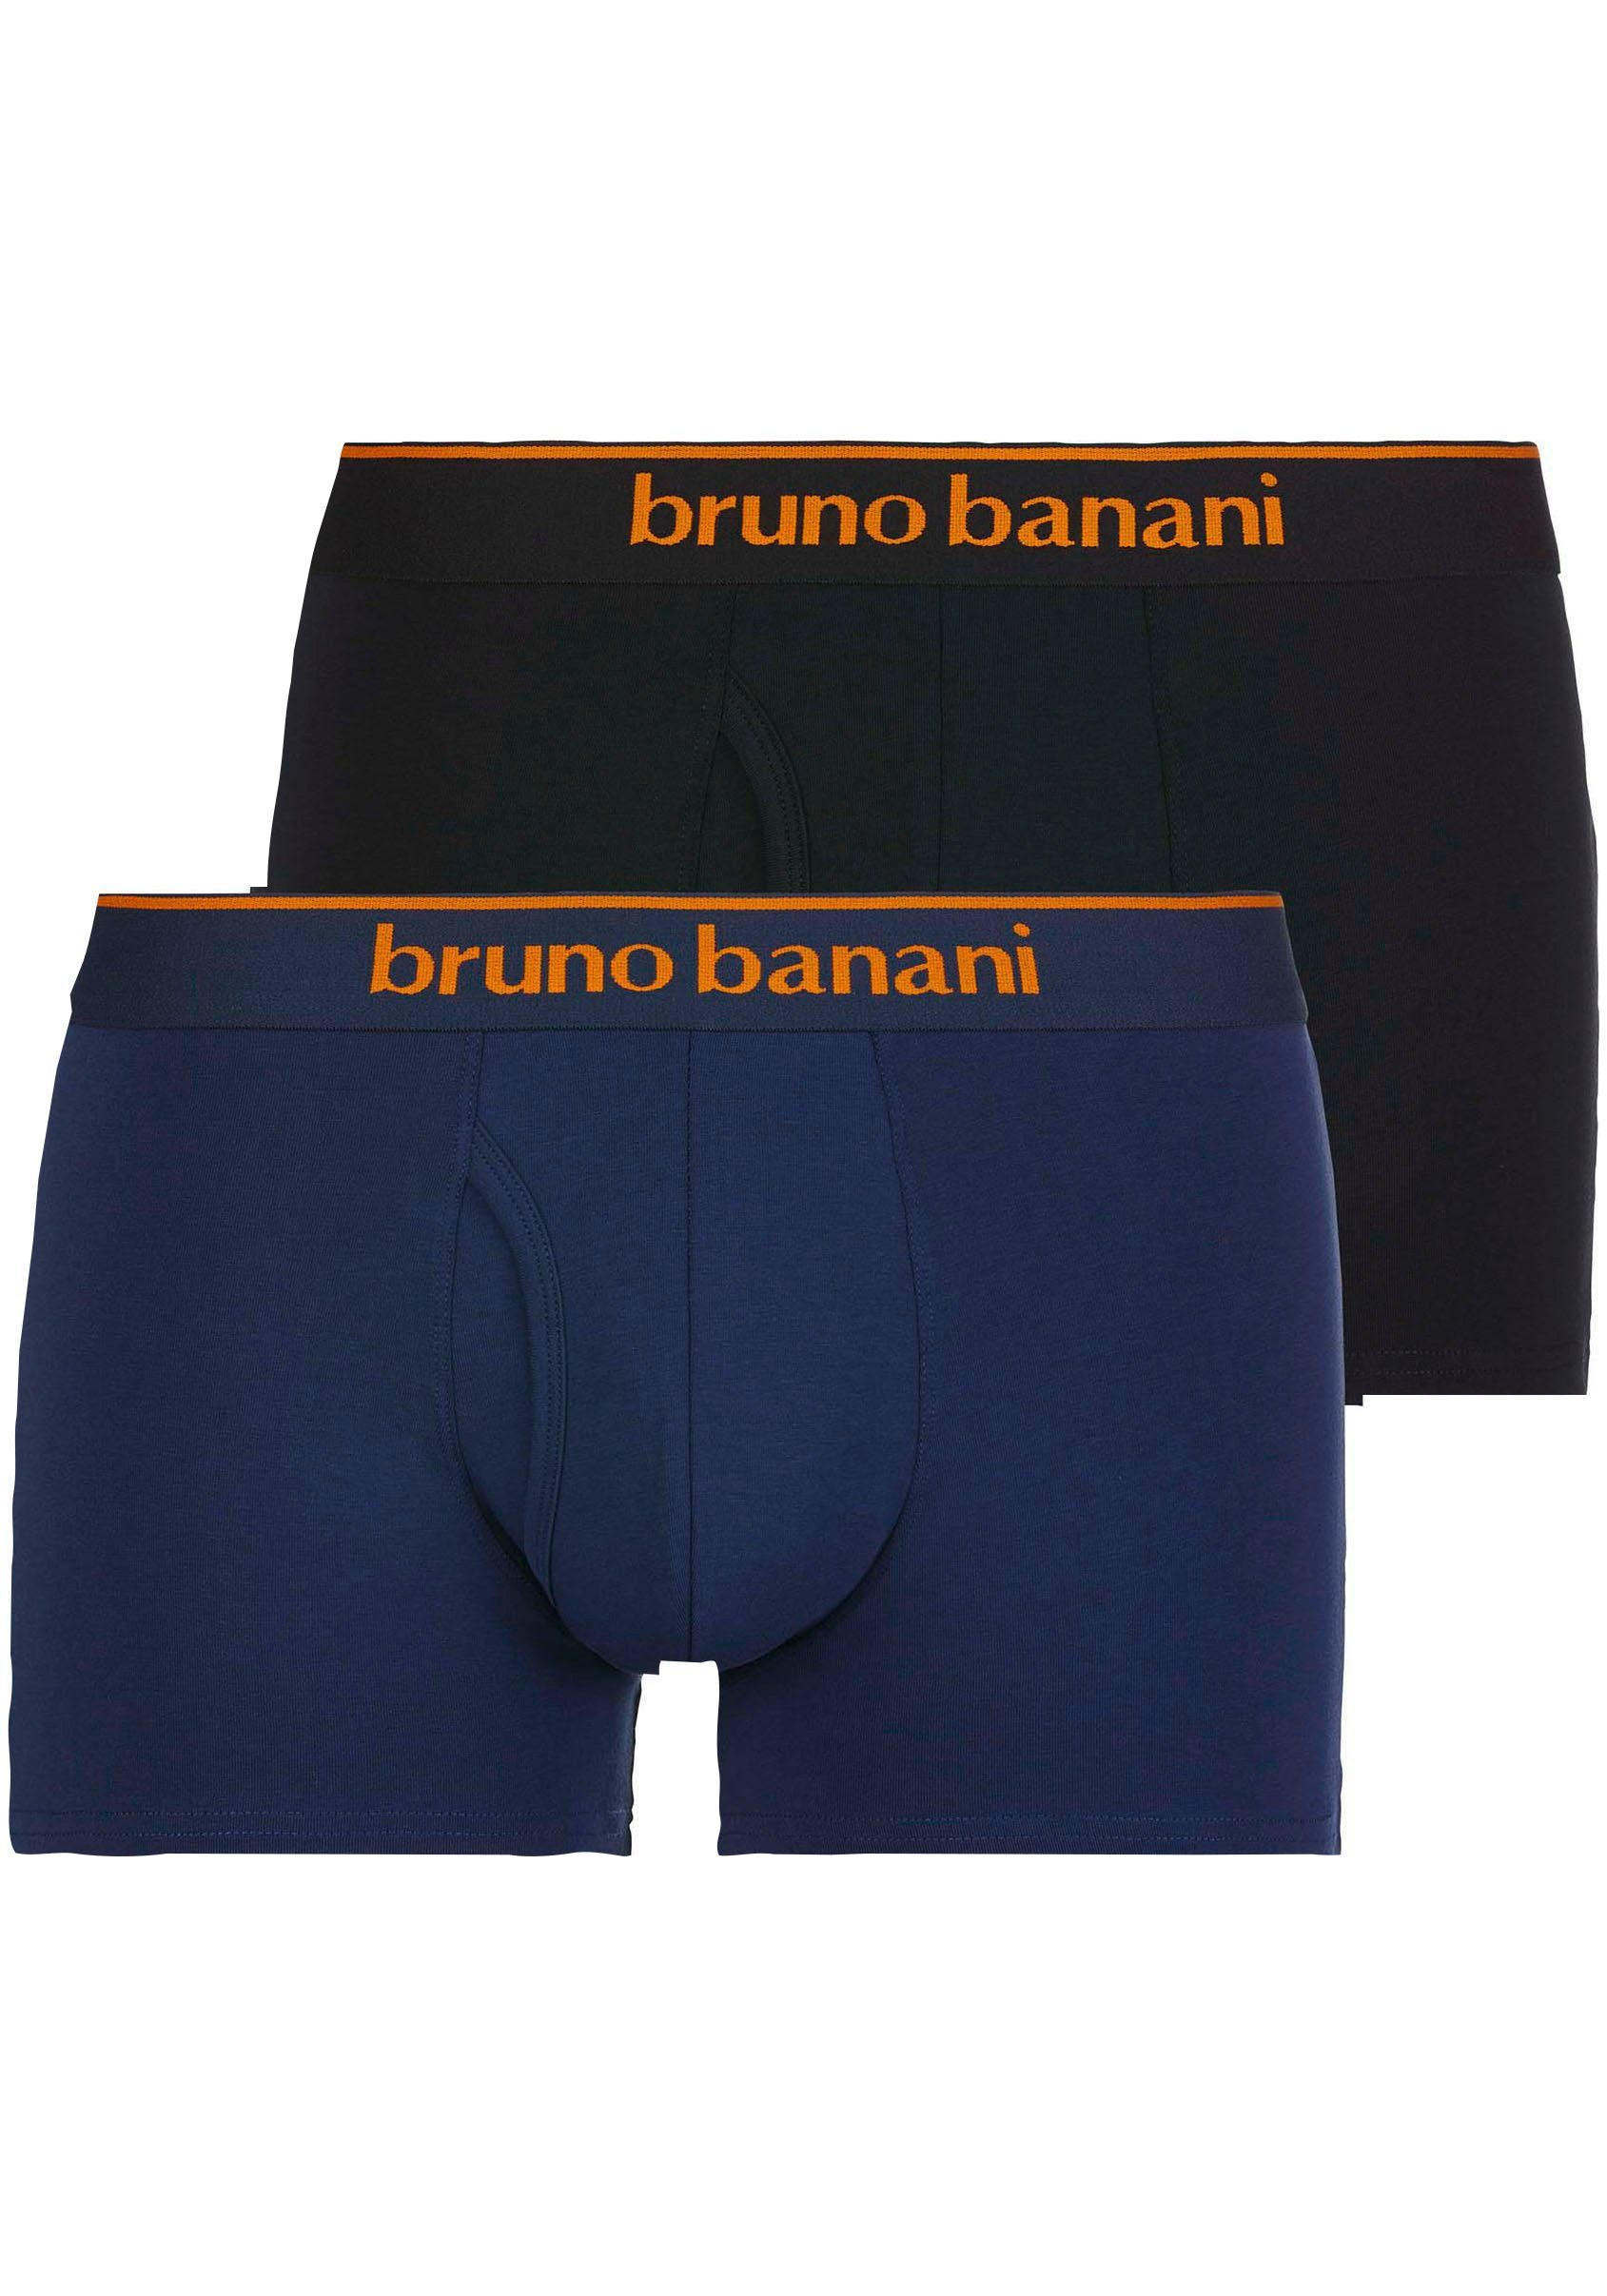 Schlussverkauf Bruno Banani Boxershorts Short 2Pack Access Quick (Packung, 2-St) blau-schwarz Kontrastfarbene Details